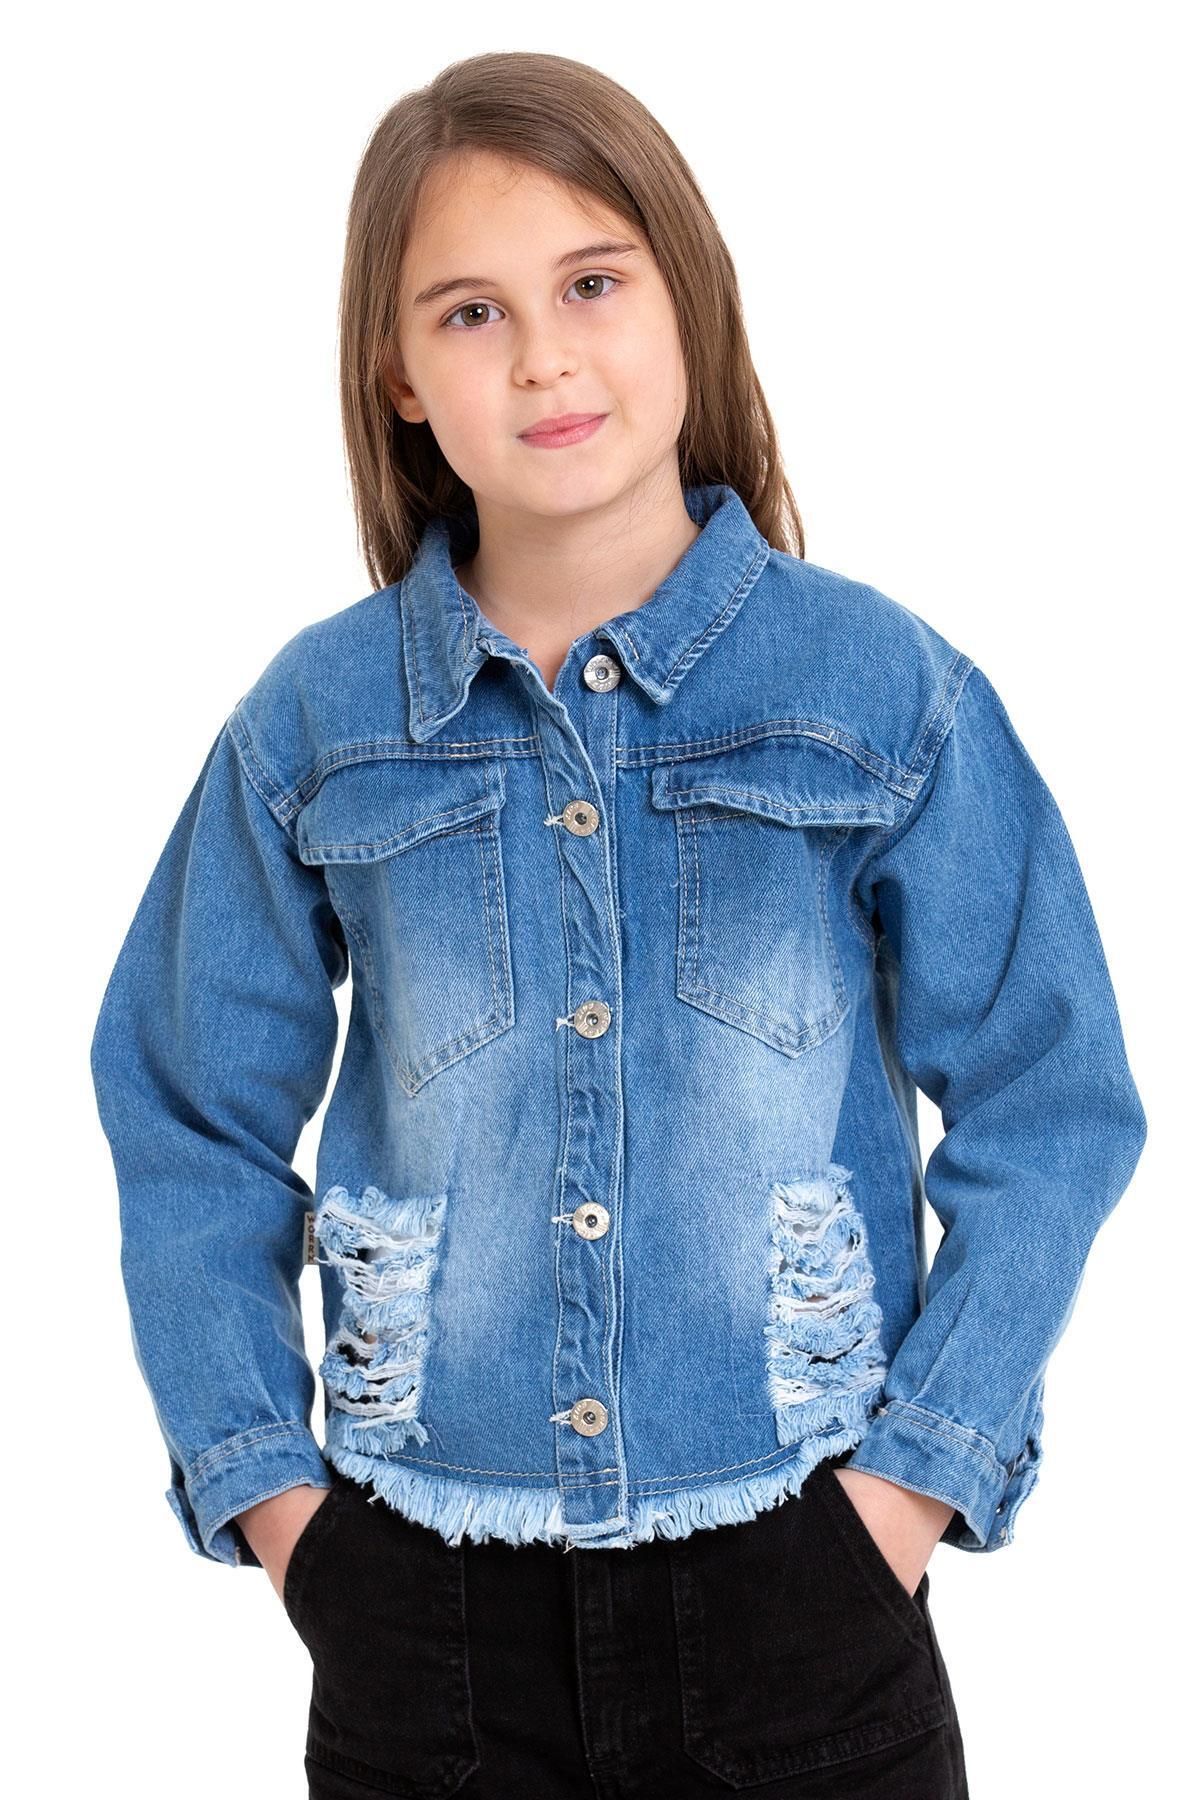 zepkids Gomlek Yaka Uzun Kol Sırt Kısmı Kelebek Nakıslı Mavi Renk Kız Çocuk Jean Ceket